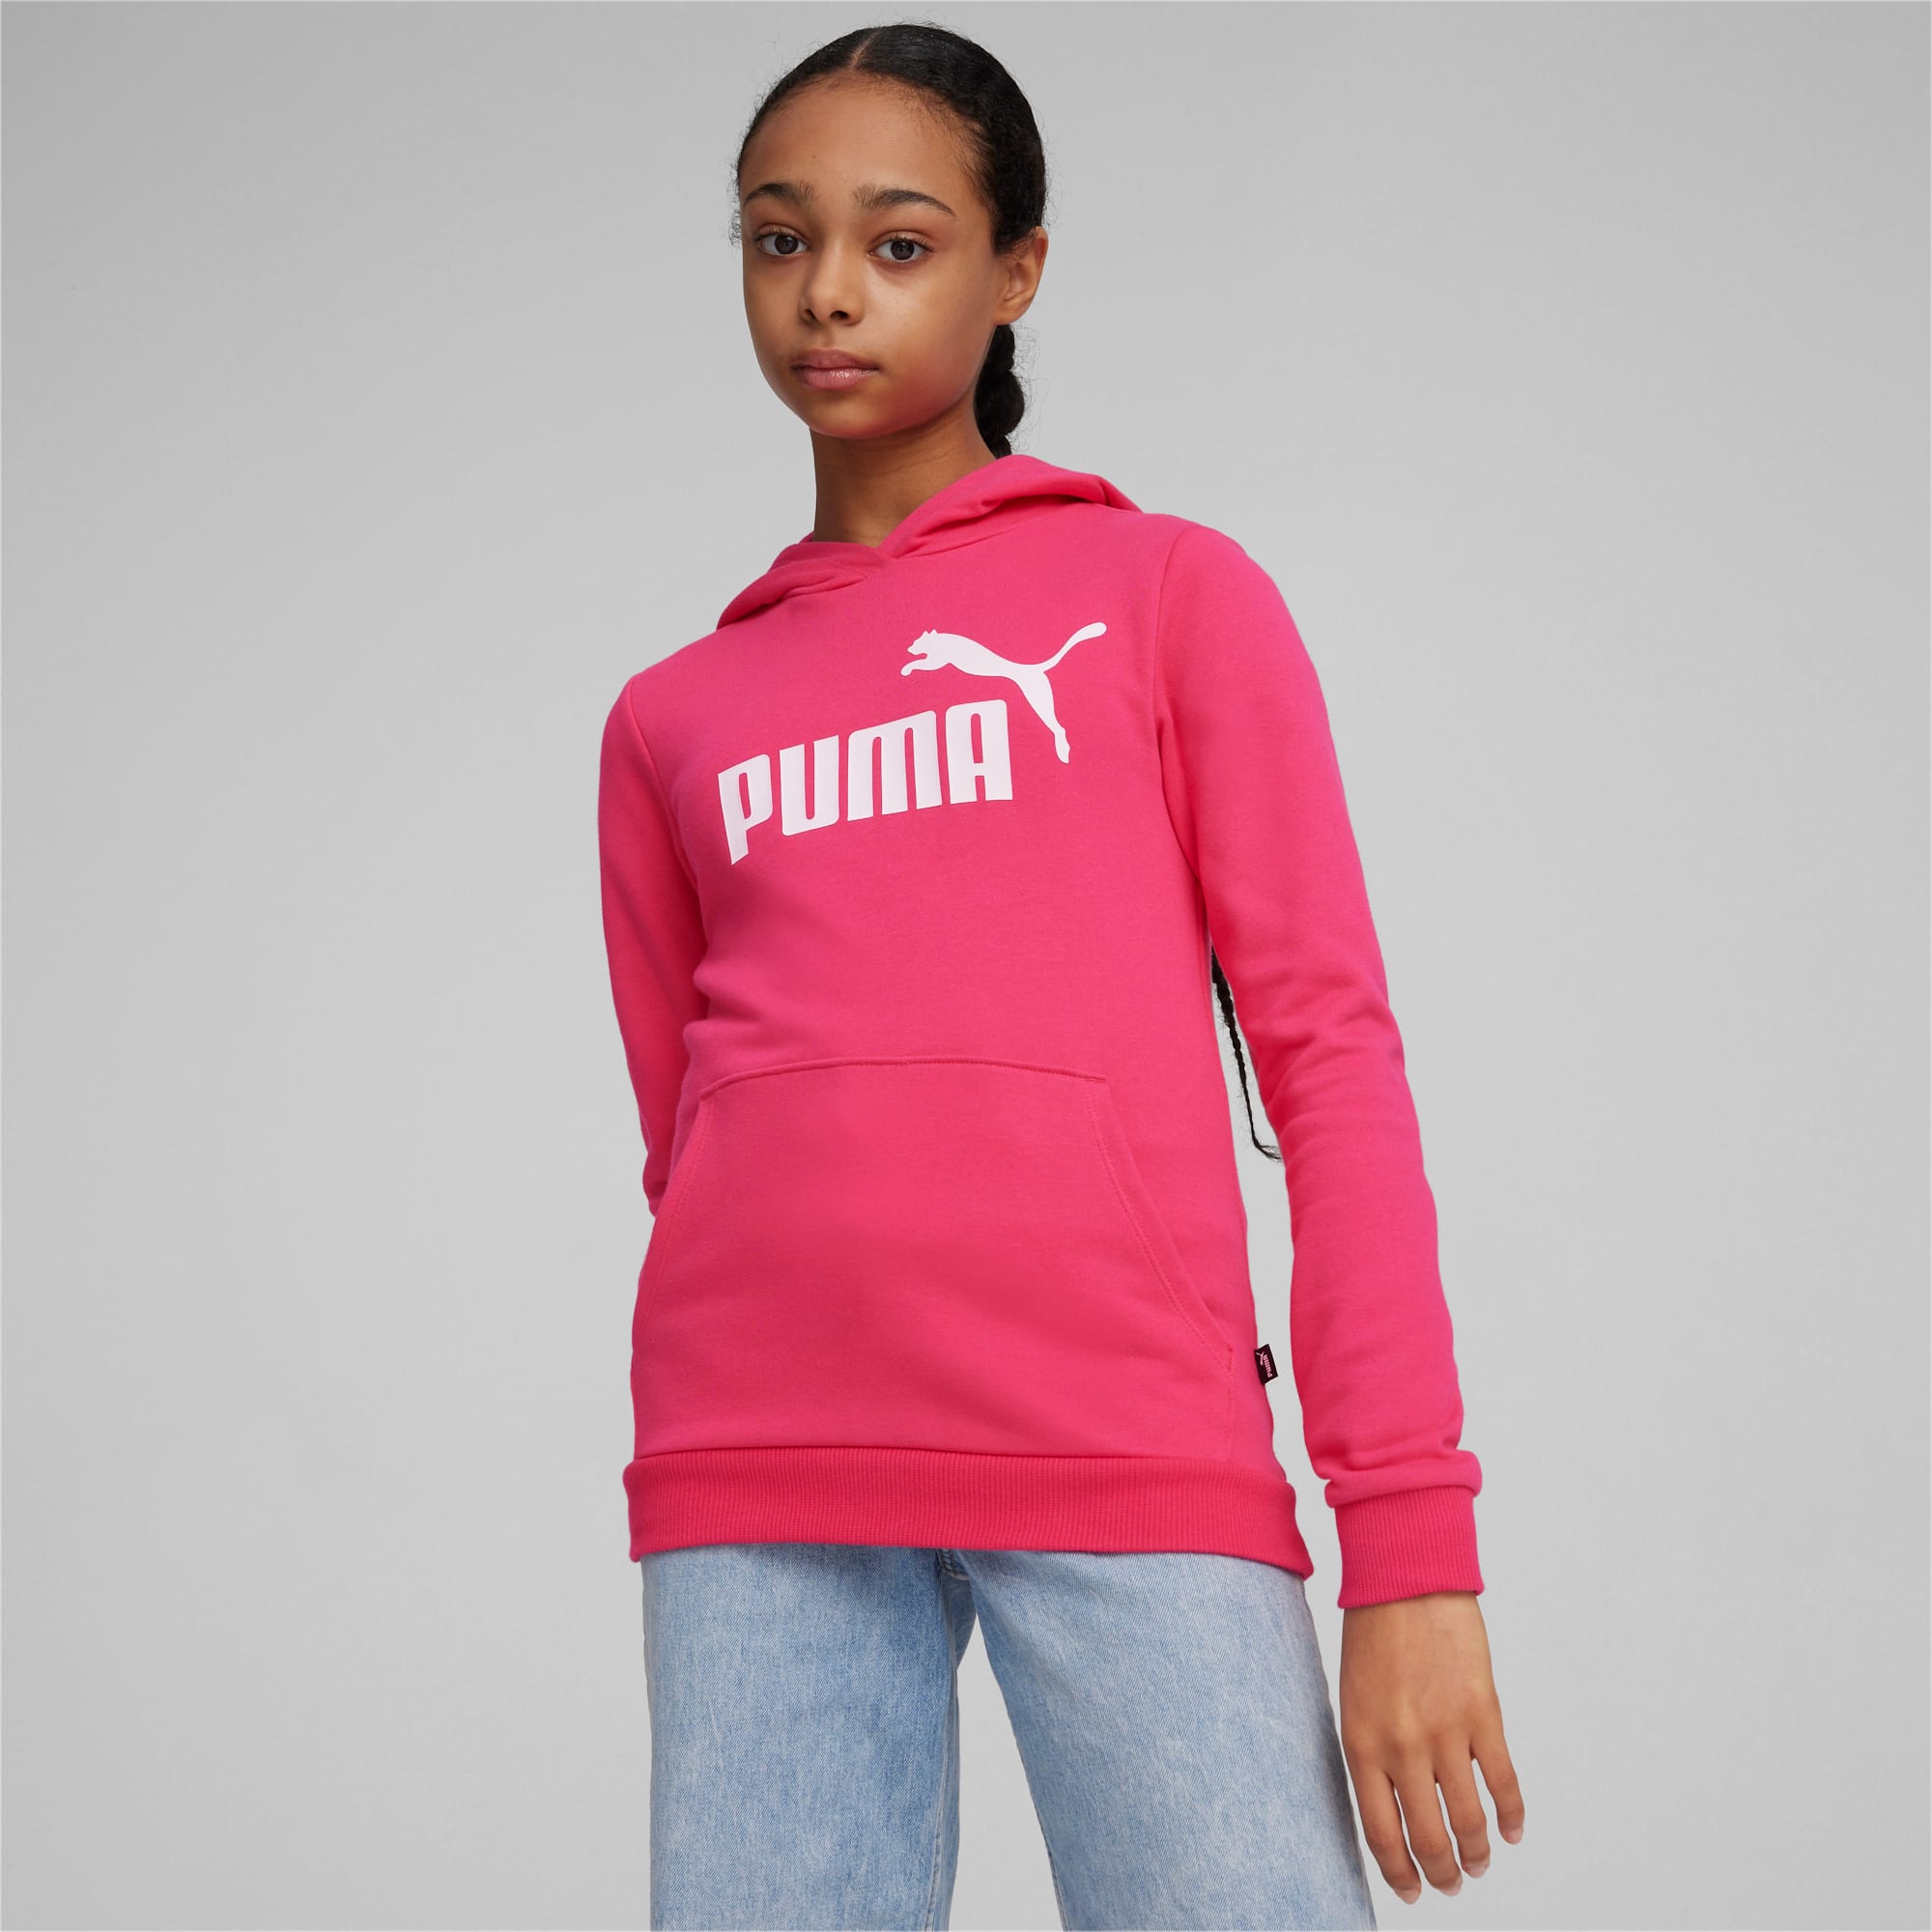 PUMA Essentials Logo Youth Hoodie, Garnet Rose, Size 11-12Y, Clothing